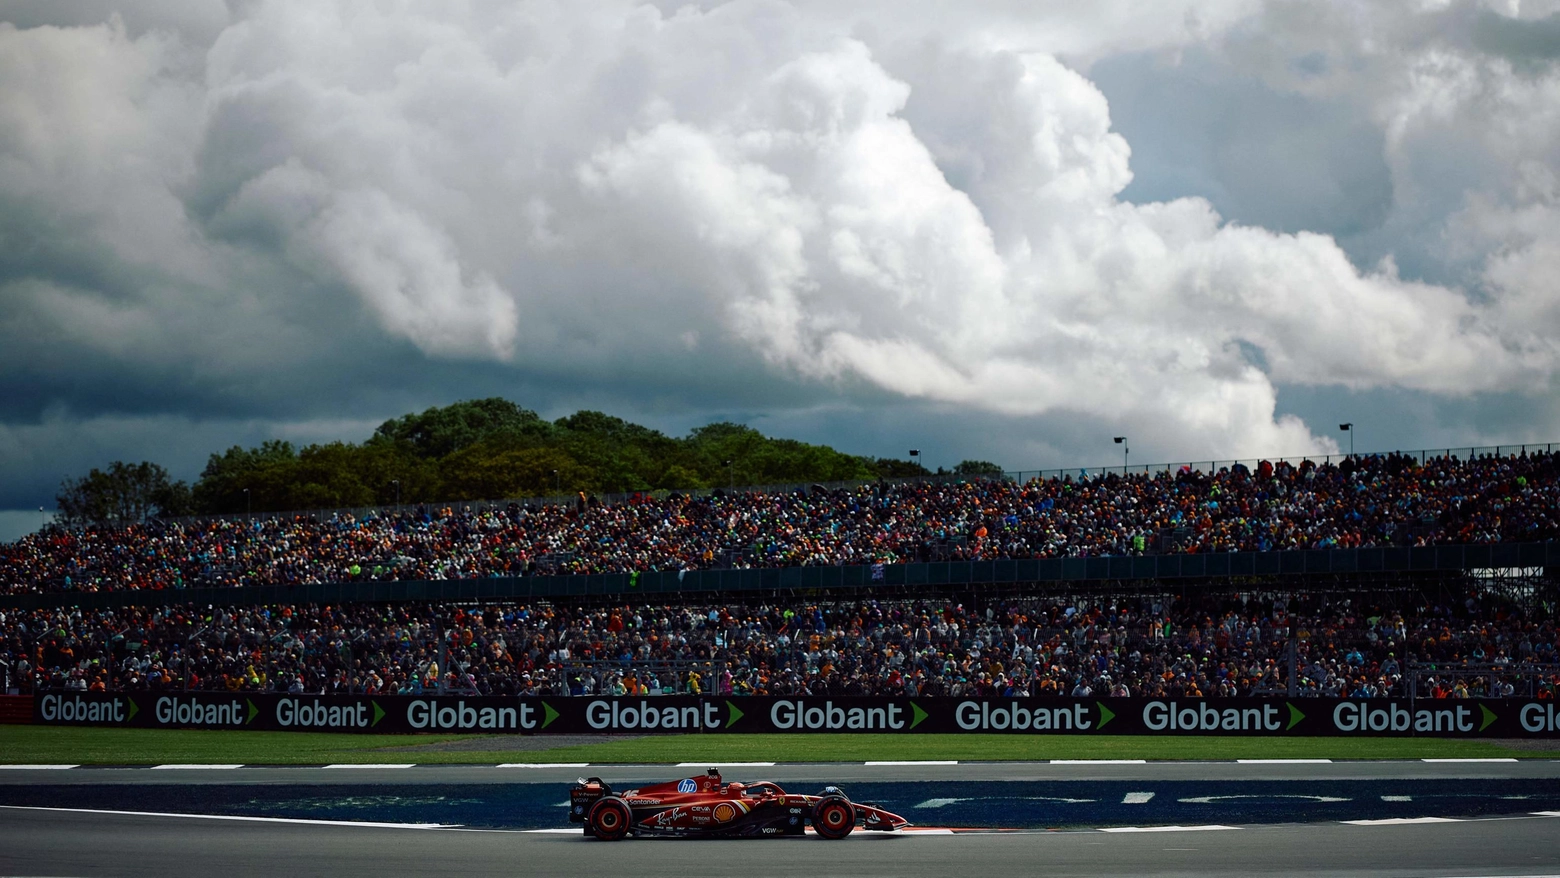 Le Mercedes hanno colonizzato la prima fila al via del Gran Premio, ma dovranno vedersela con il miglior passo gara di McLaren e Red Bull. Ferrari dispersa